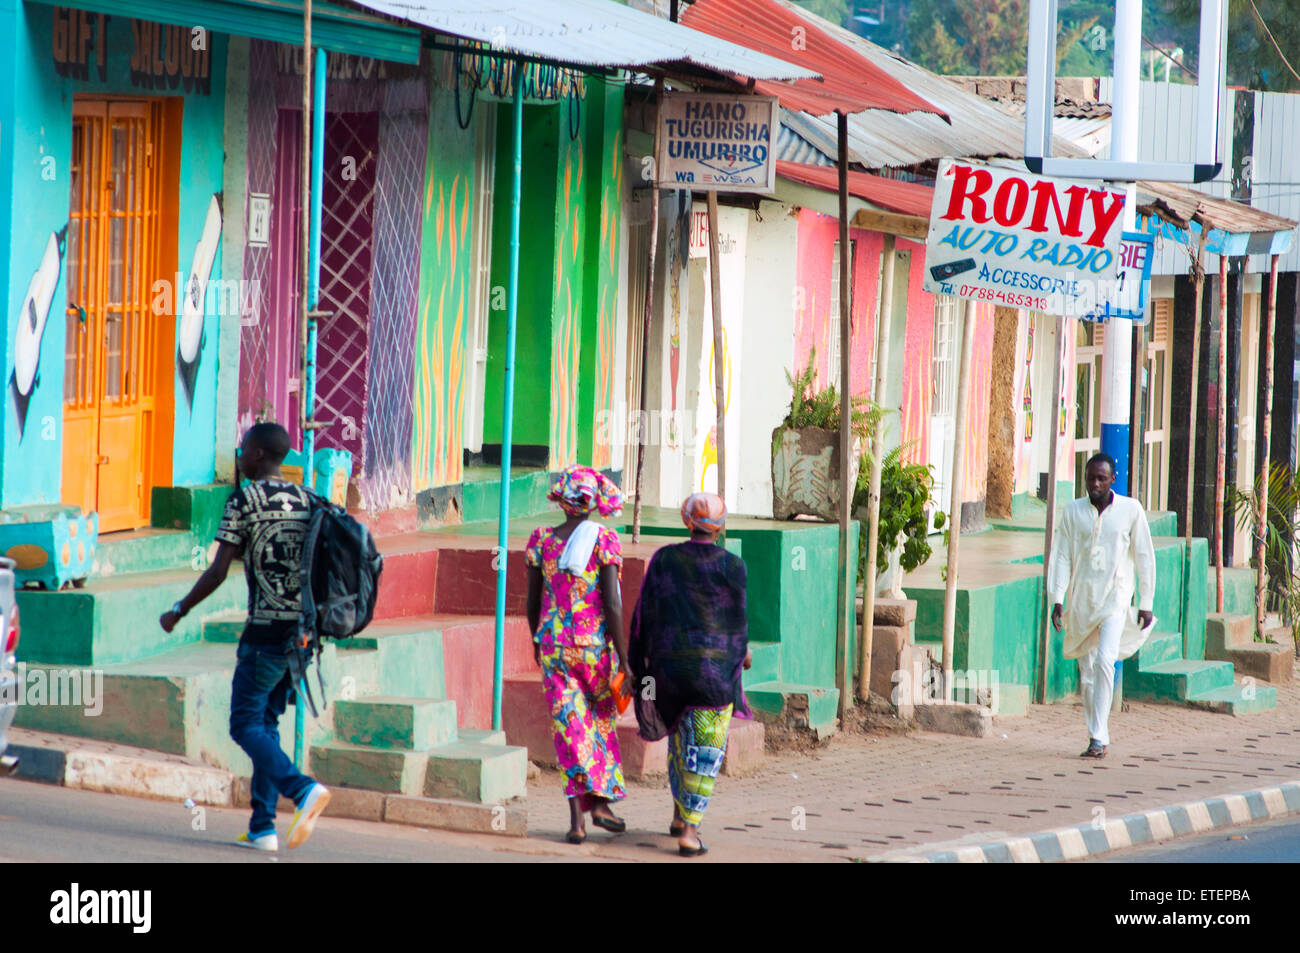 Scène de rue avec des boutiques aux couleurs lumineuses, Nyamirambo, Kigali, Rwanda Banque D'Images